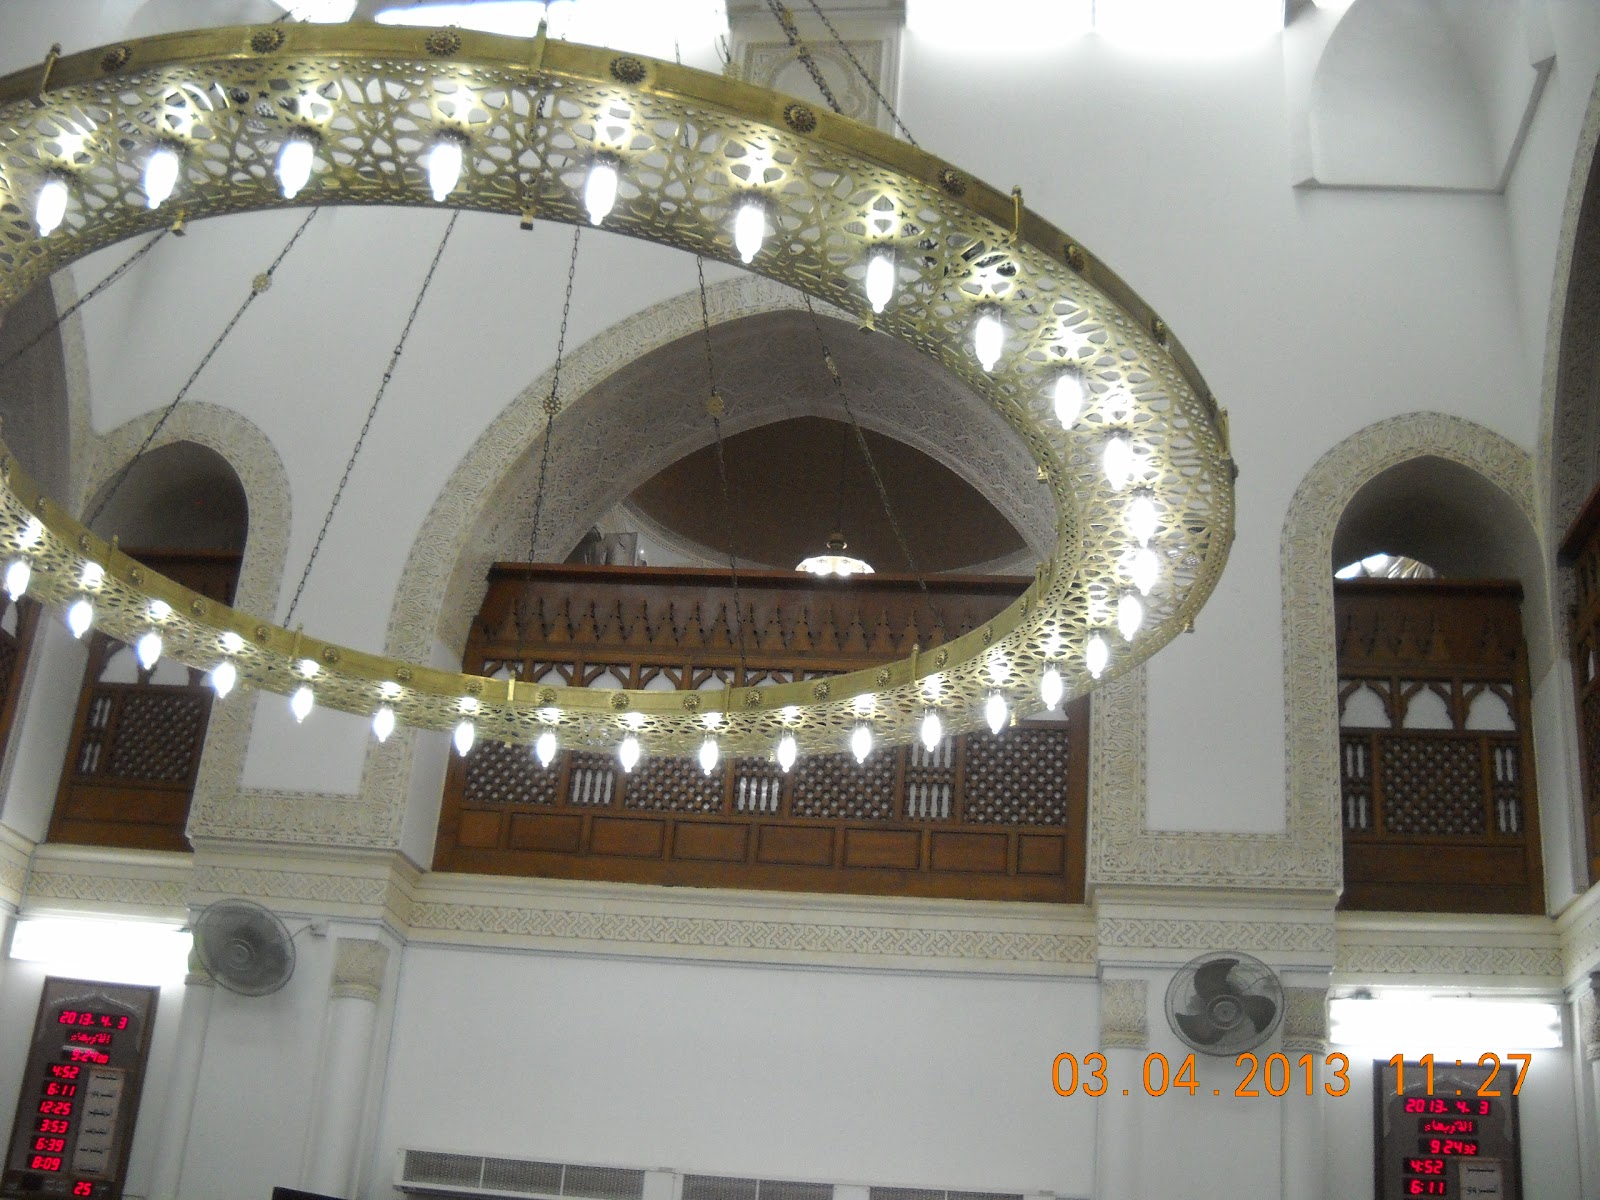 Masjid Qiblatein